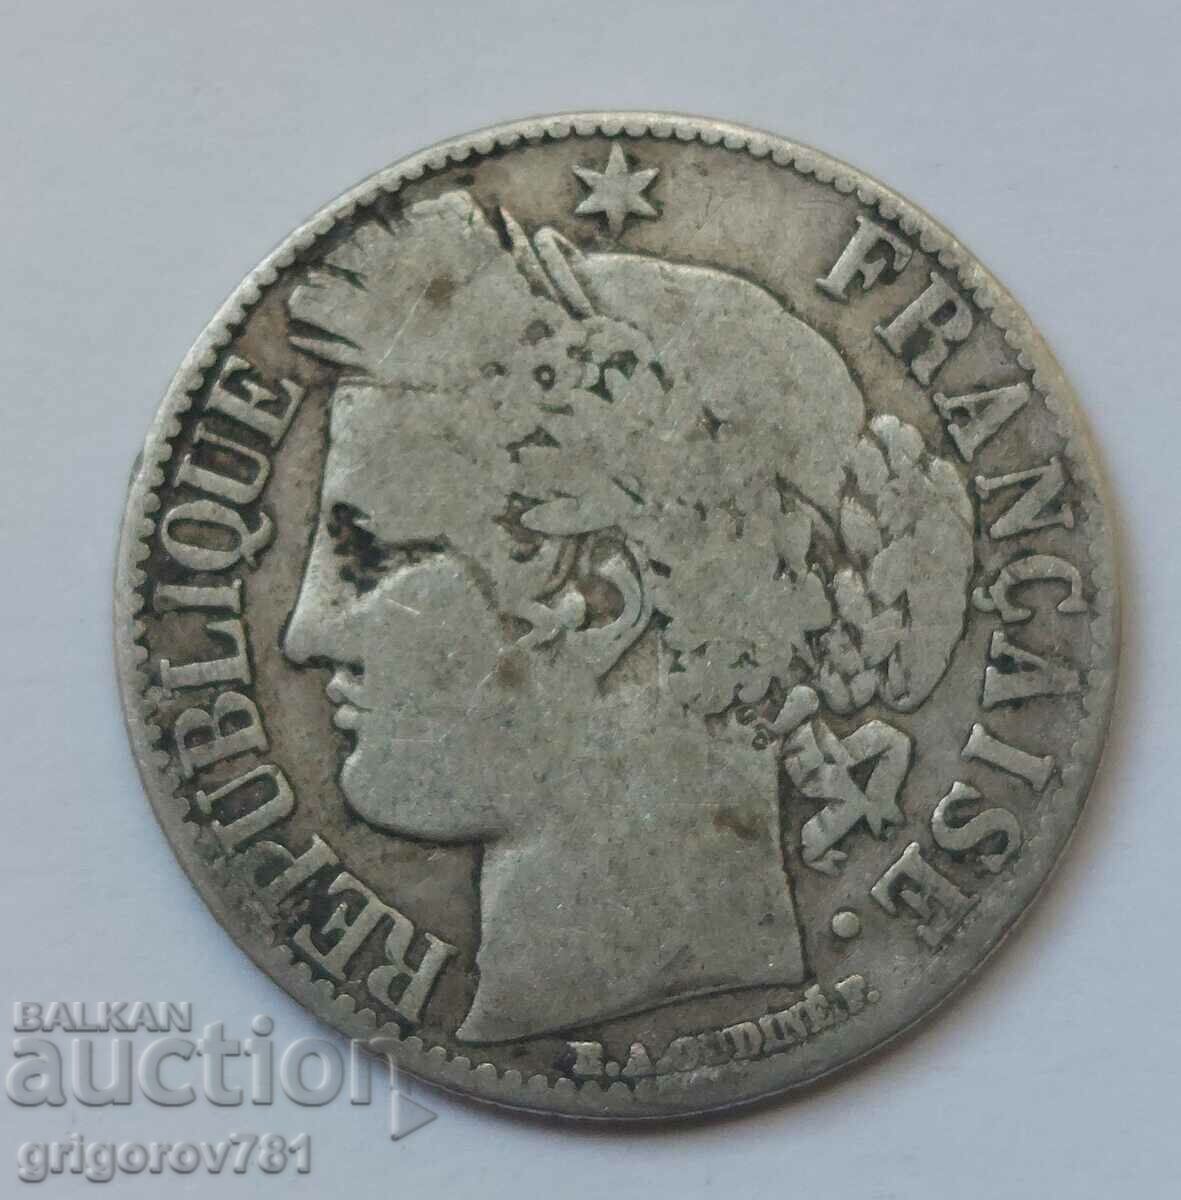 Ασήμι 1 φράγκου Γαλλία 1881 A - Ασημένιο νόμισμα #39